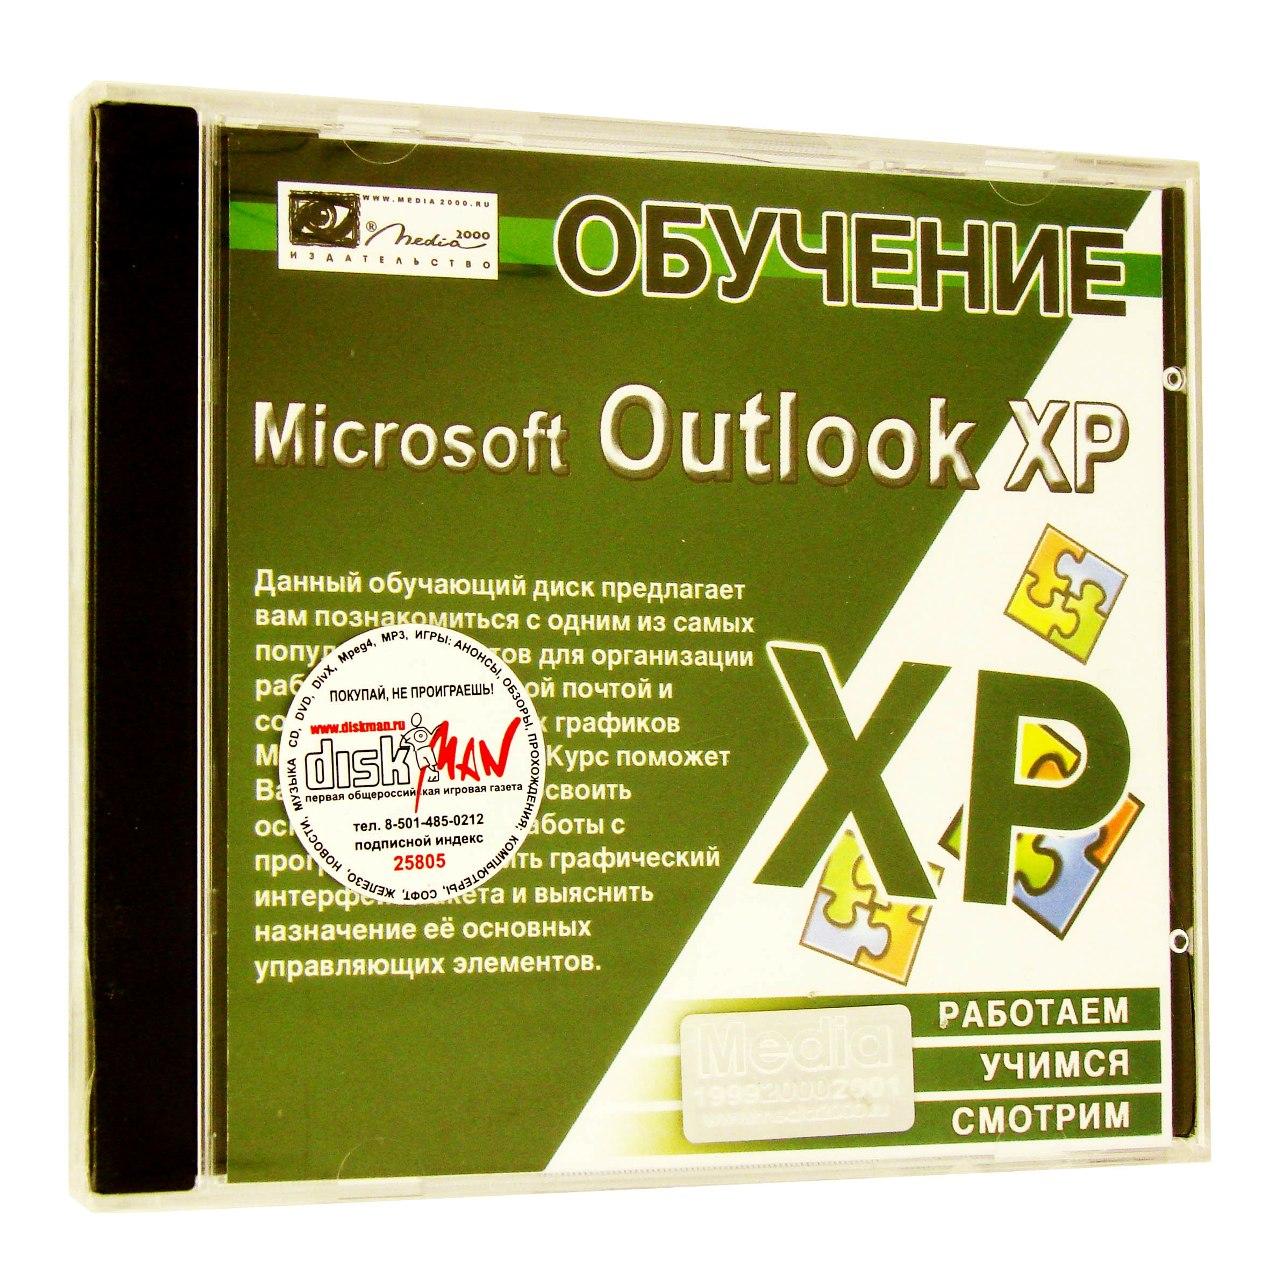 Компьютерный компакт-диск Обучение Microsoft Outlook XP (PC), фирма "Media2000", 1CD